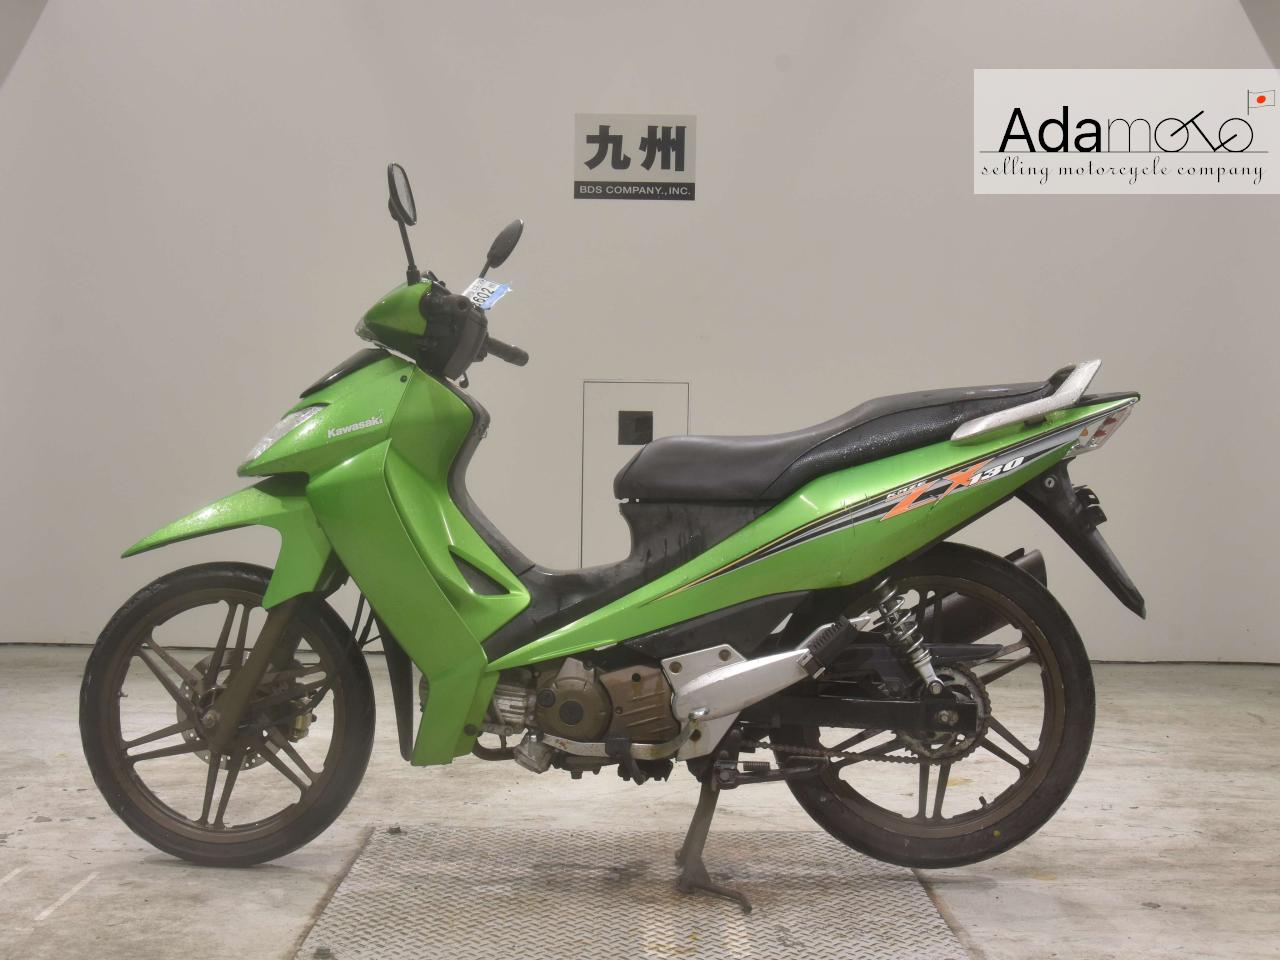 Kawasaki ZX130 - Adamoto - Motorcycles from Japan